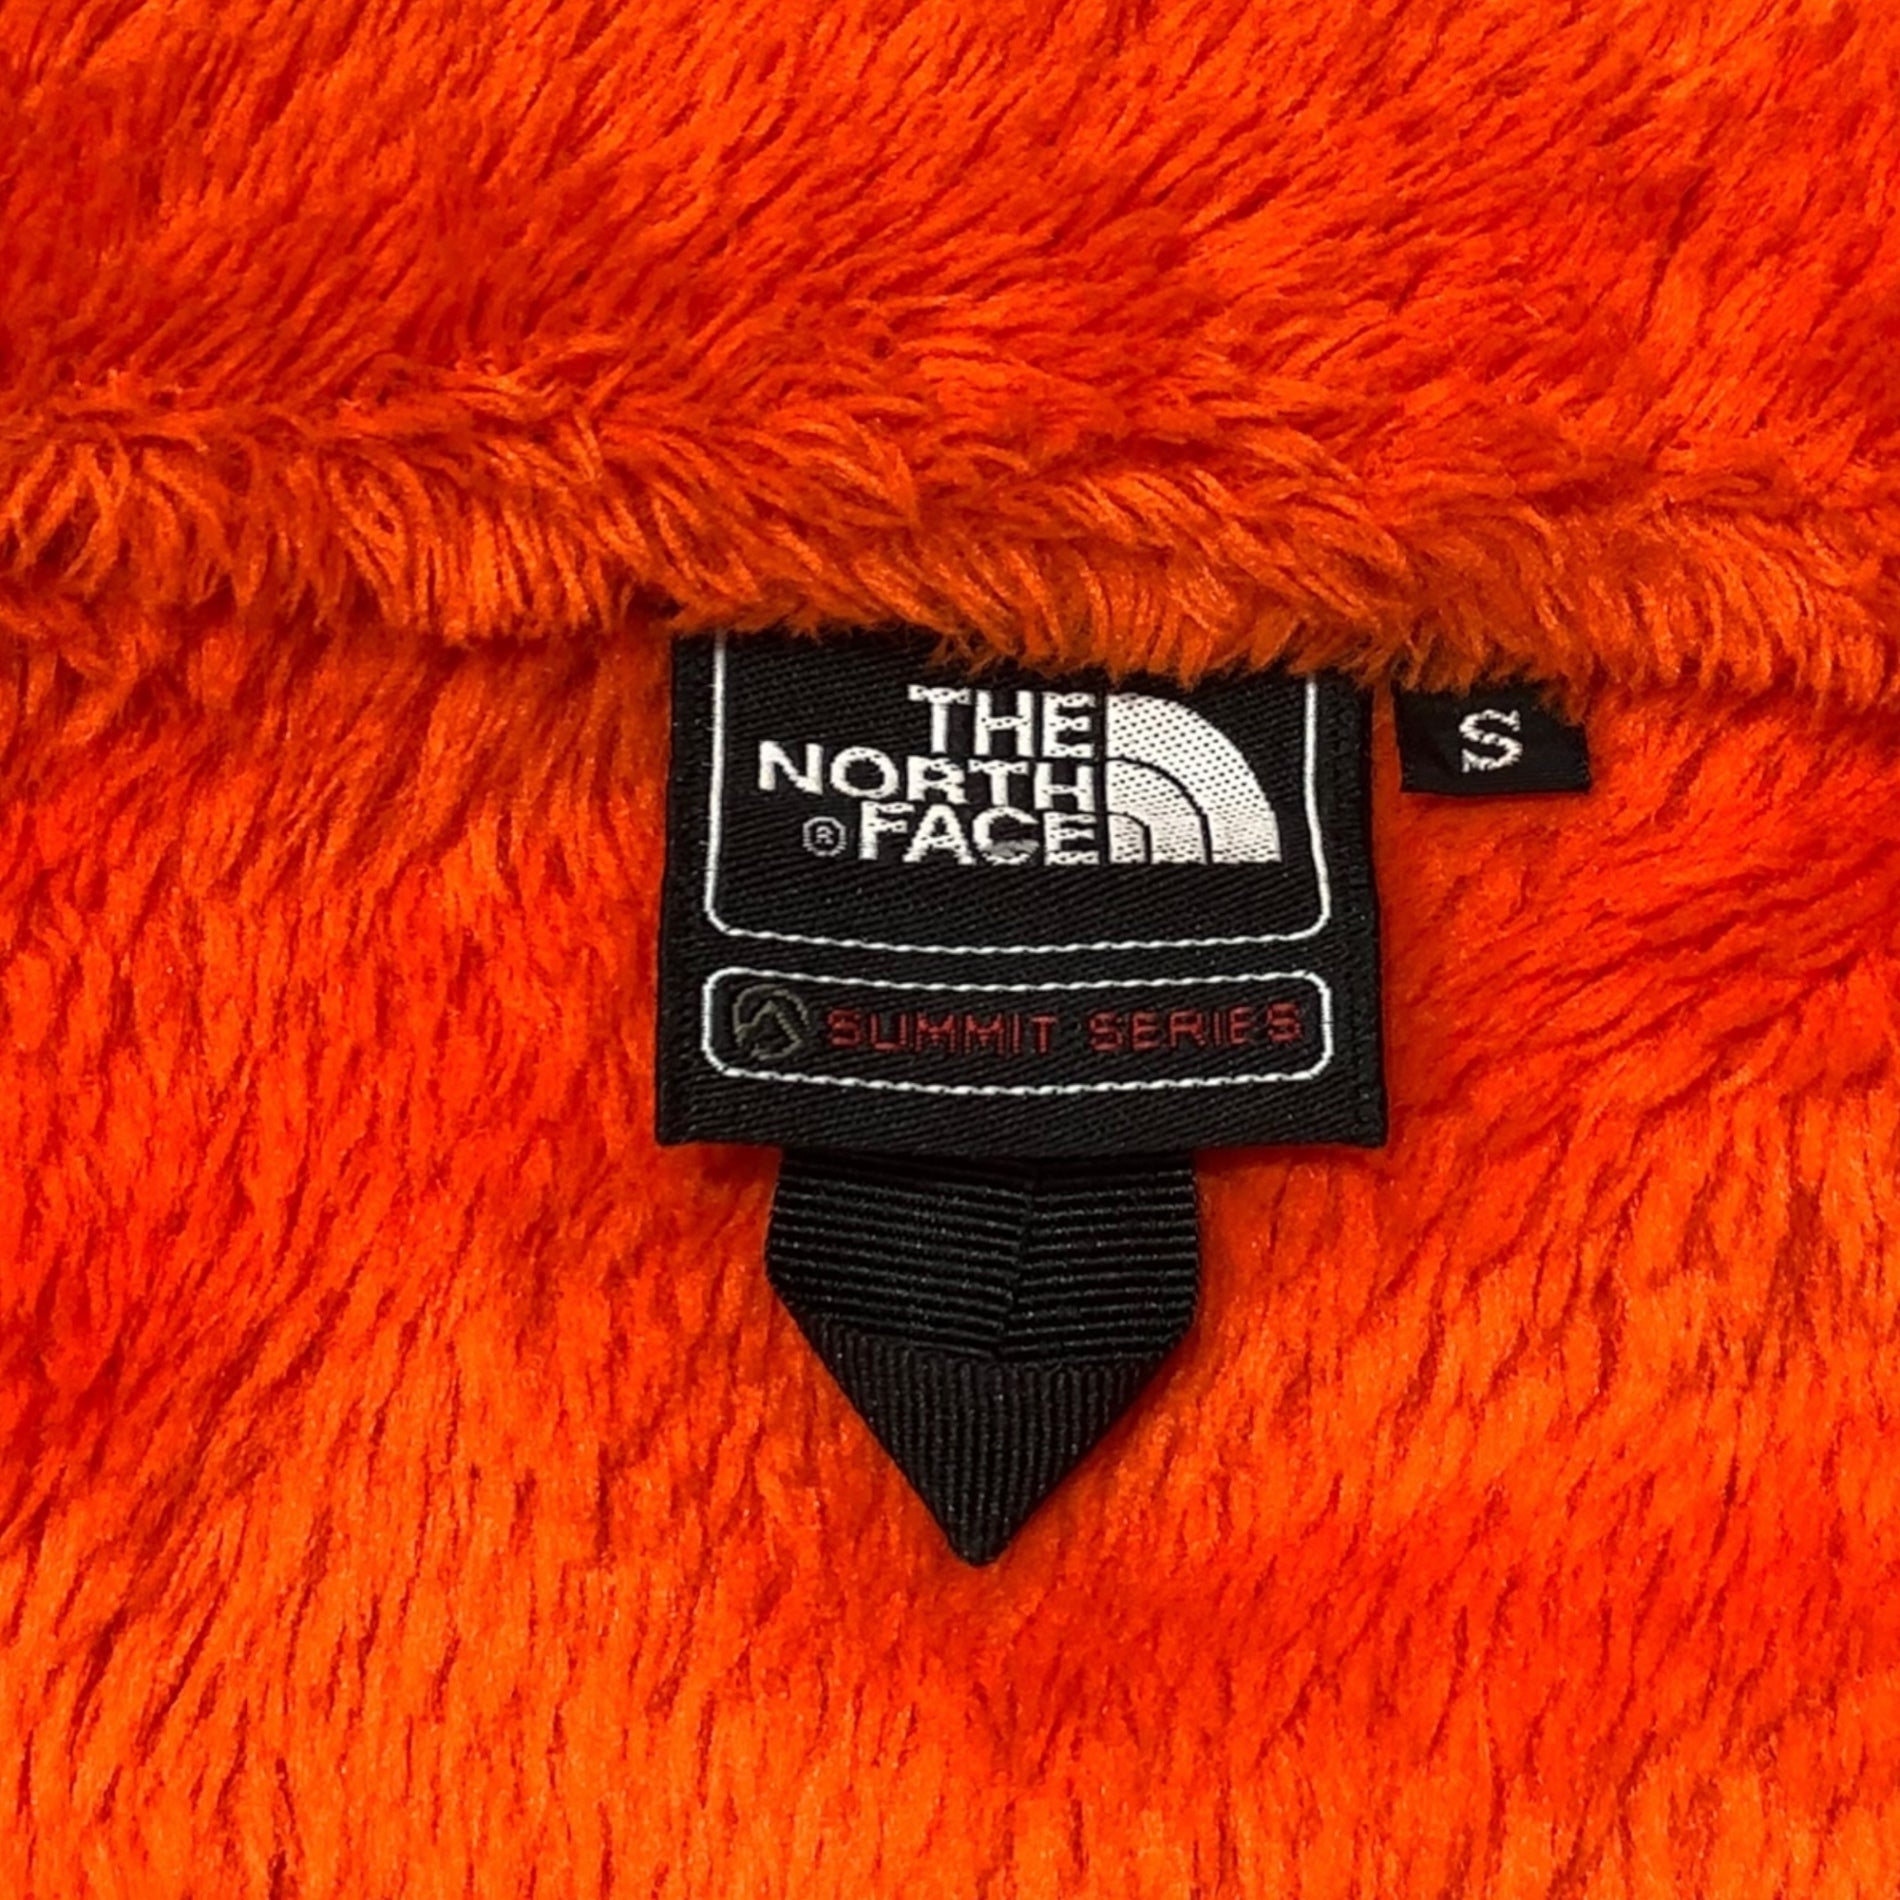 THE NORTH FACE(ノースフェイス) ANTARCTICA Versa Loft Jacket  アンタークティカ ヴァーサ ロフト ジャケット NA61501 S オレンジ×ブルー フリース ジャケット